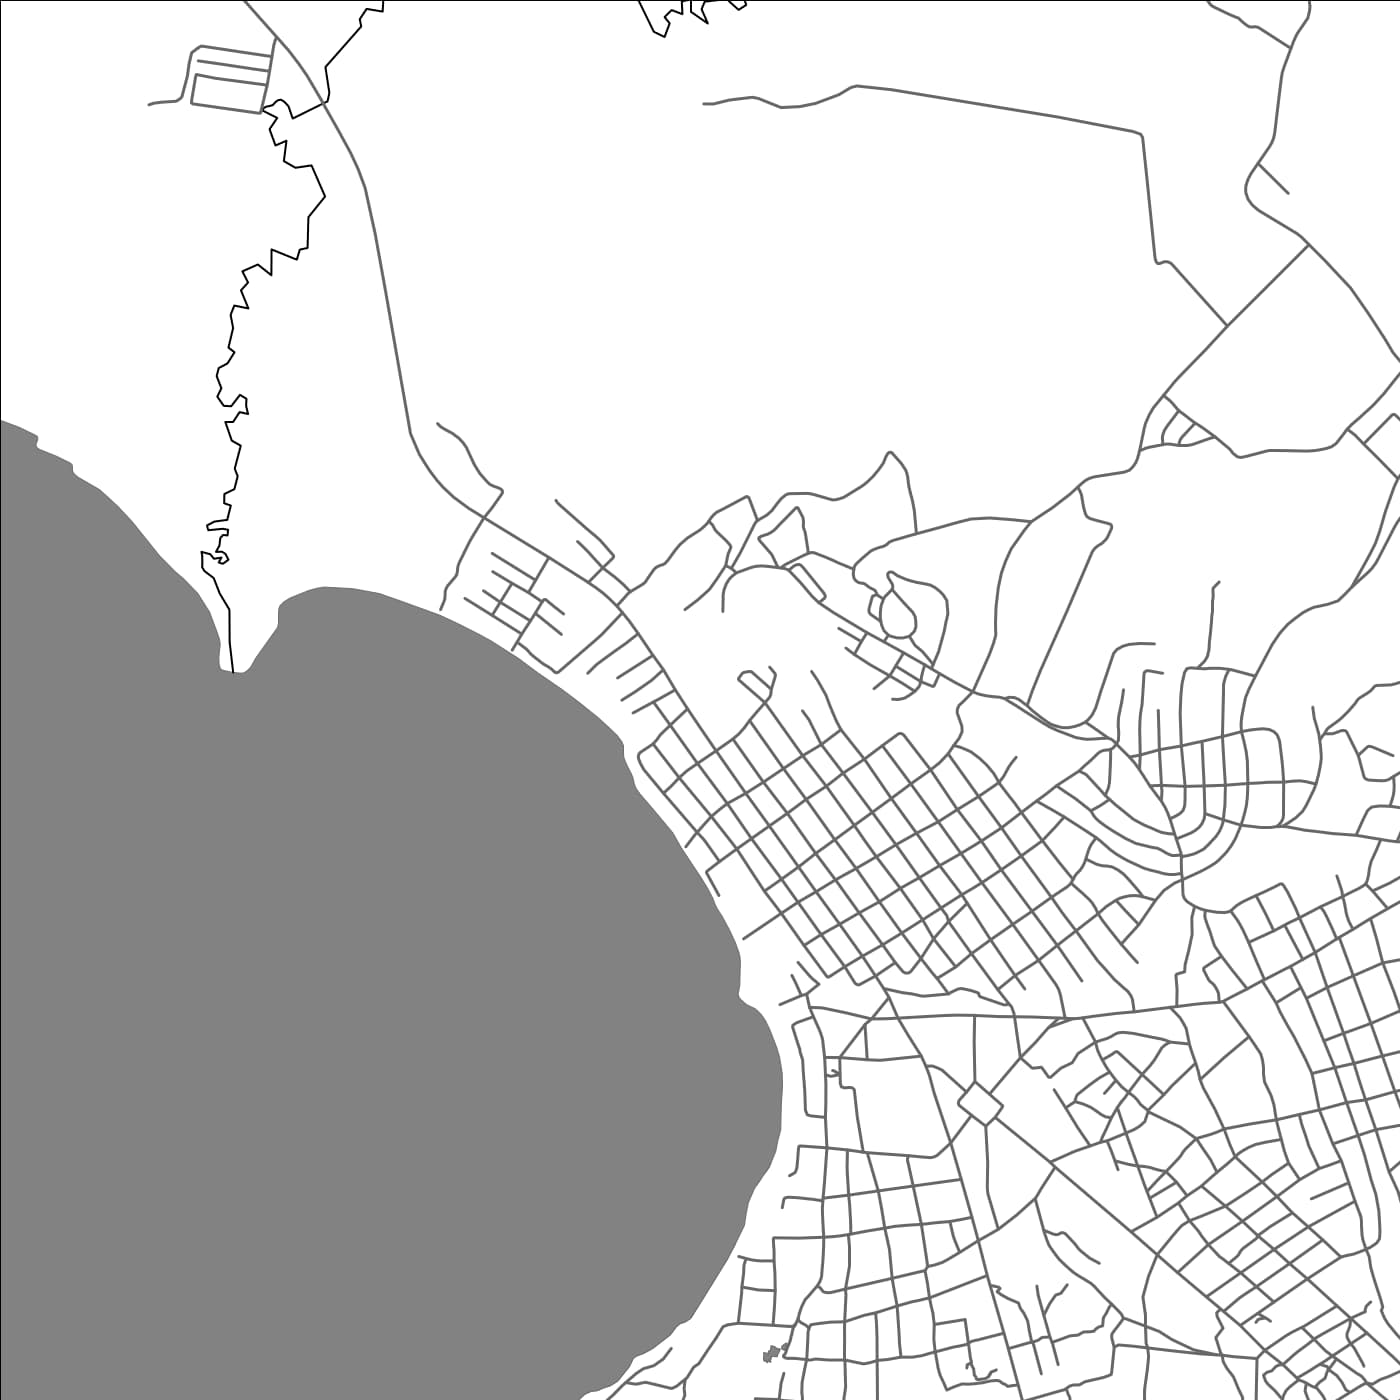 ROAD MAP OF RUMONGE, BURUNDI BY MAPBAKES